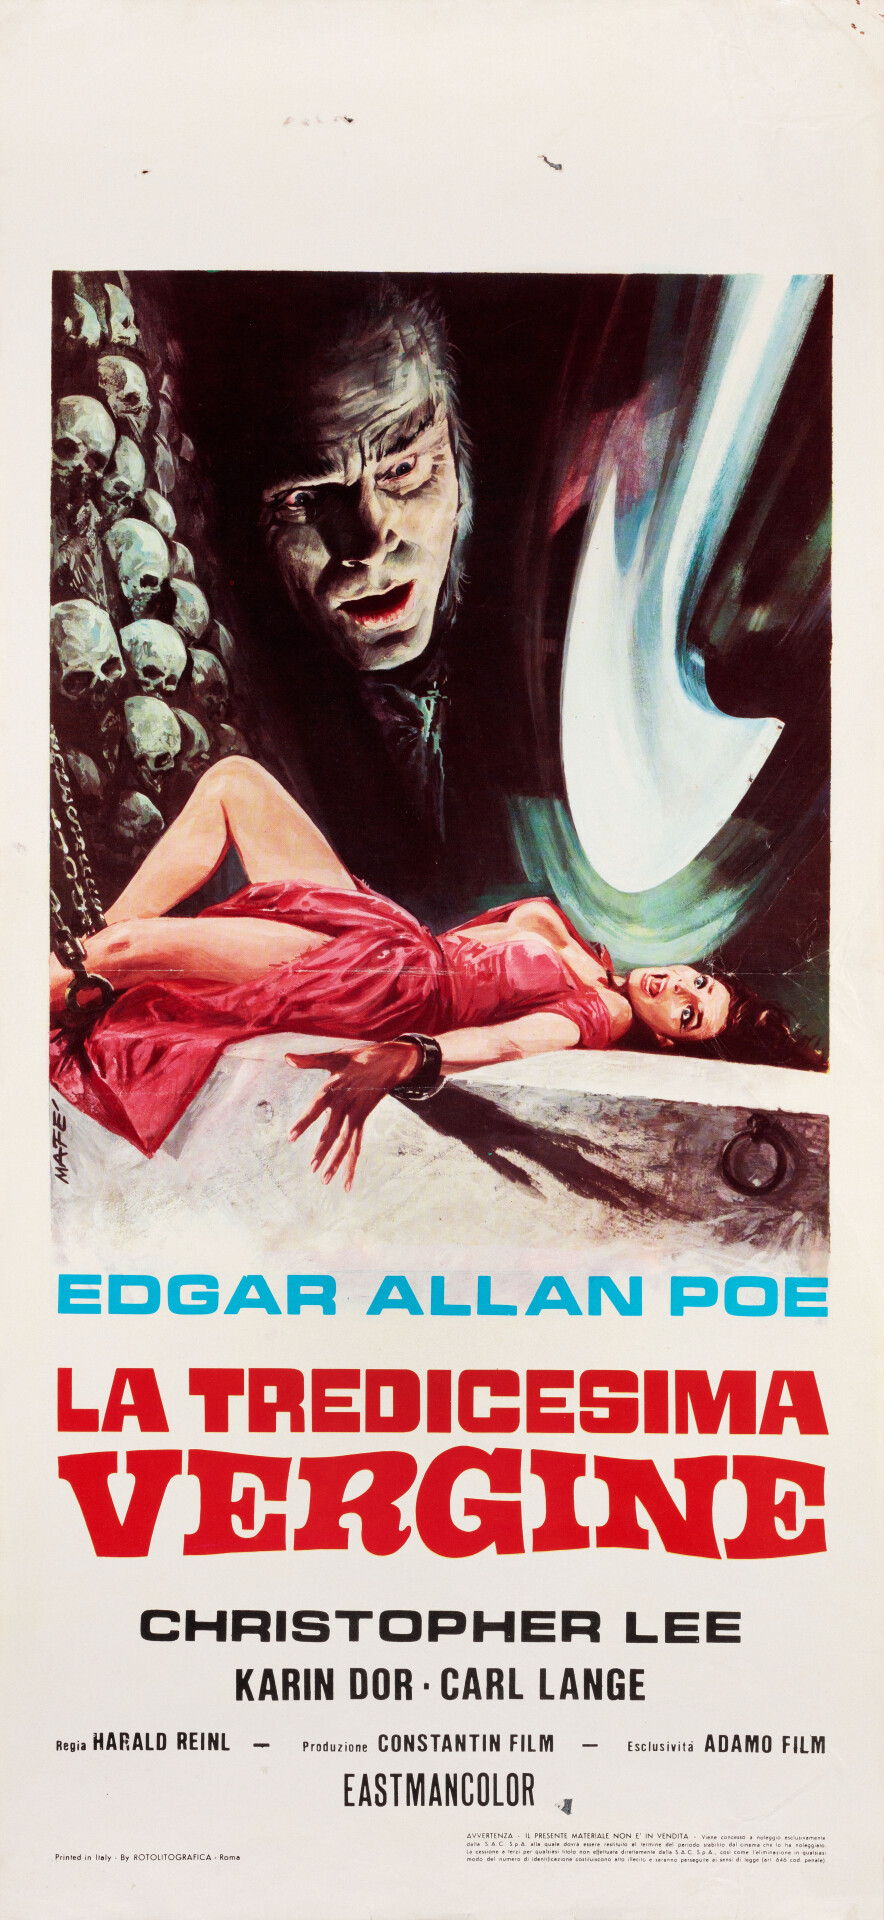 Колодец и маятник (Blood Demon, 1967), режиссёр Харальд Райнль, итальянский постер к фильму, автор Мэйф (ужасы, 1970 год)